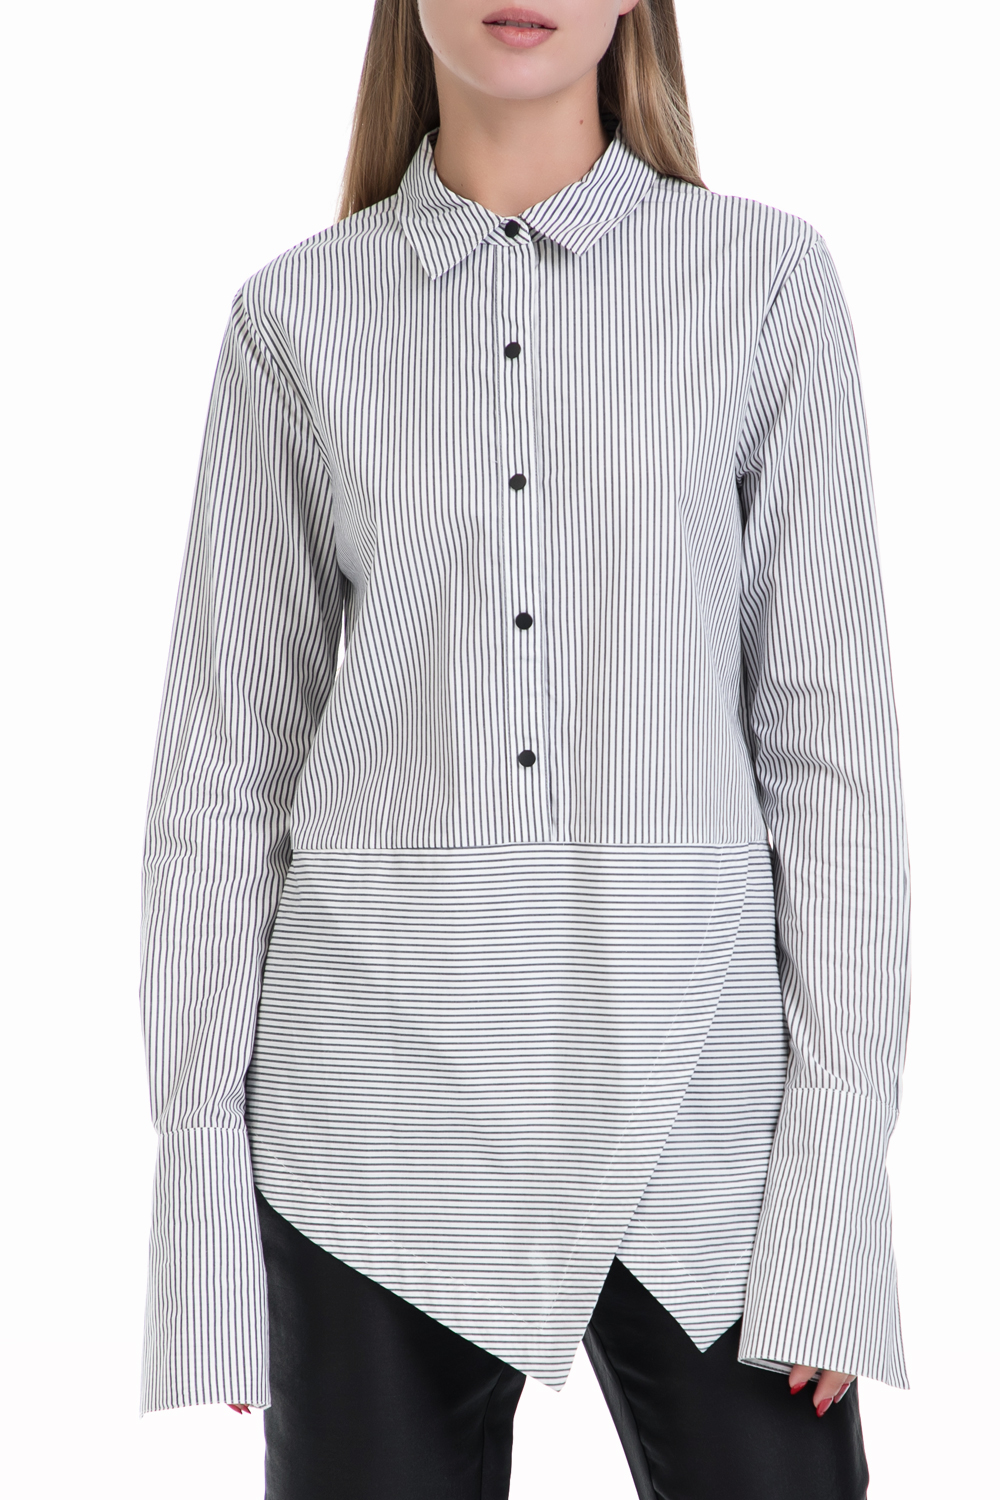 Γυναικεία/Ρούχα/Πουκάμισα/Μακρυμάνικα SCOTCH & SODA - Γυναικείο πουκάμισο Cotton shirt with angled hem λευκό